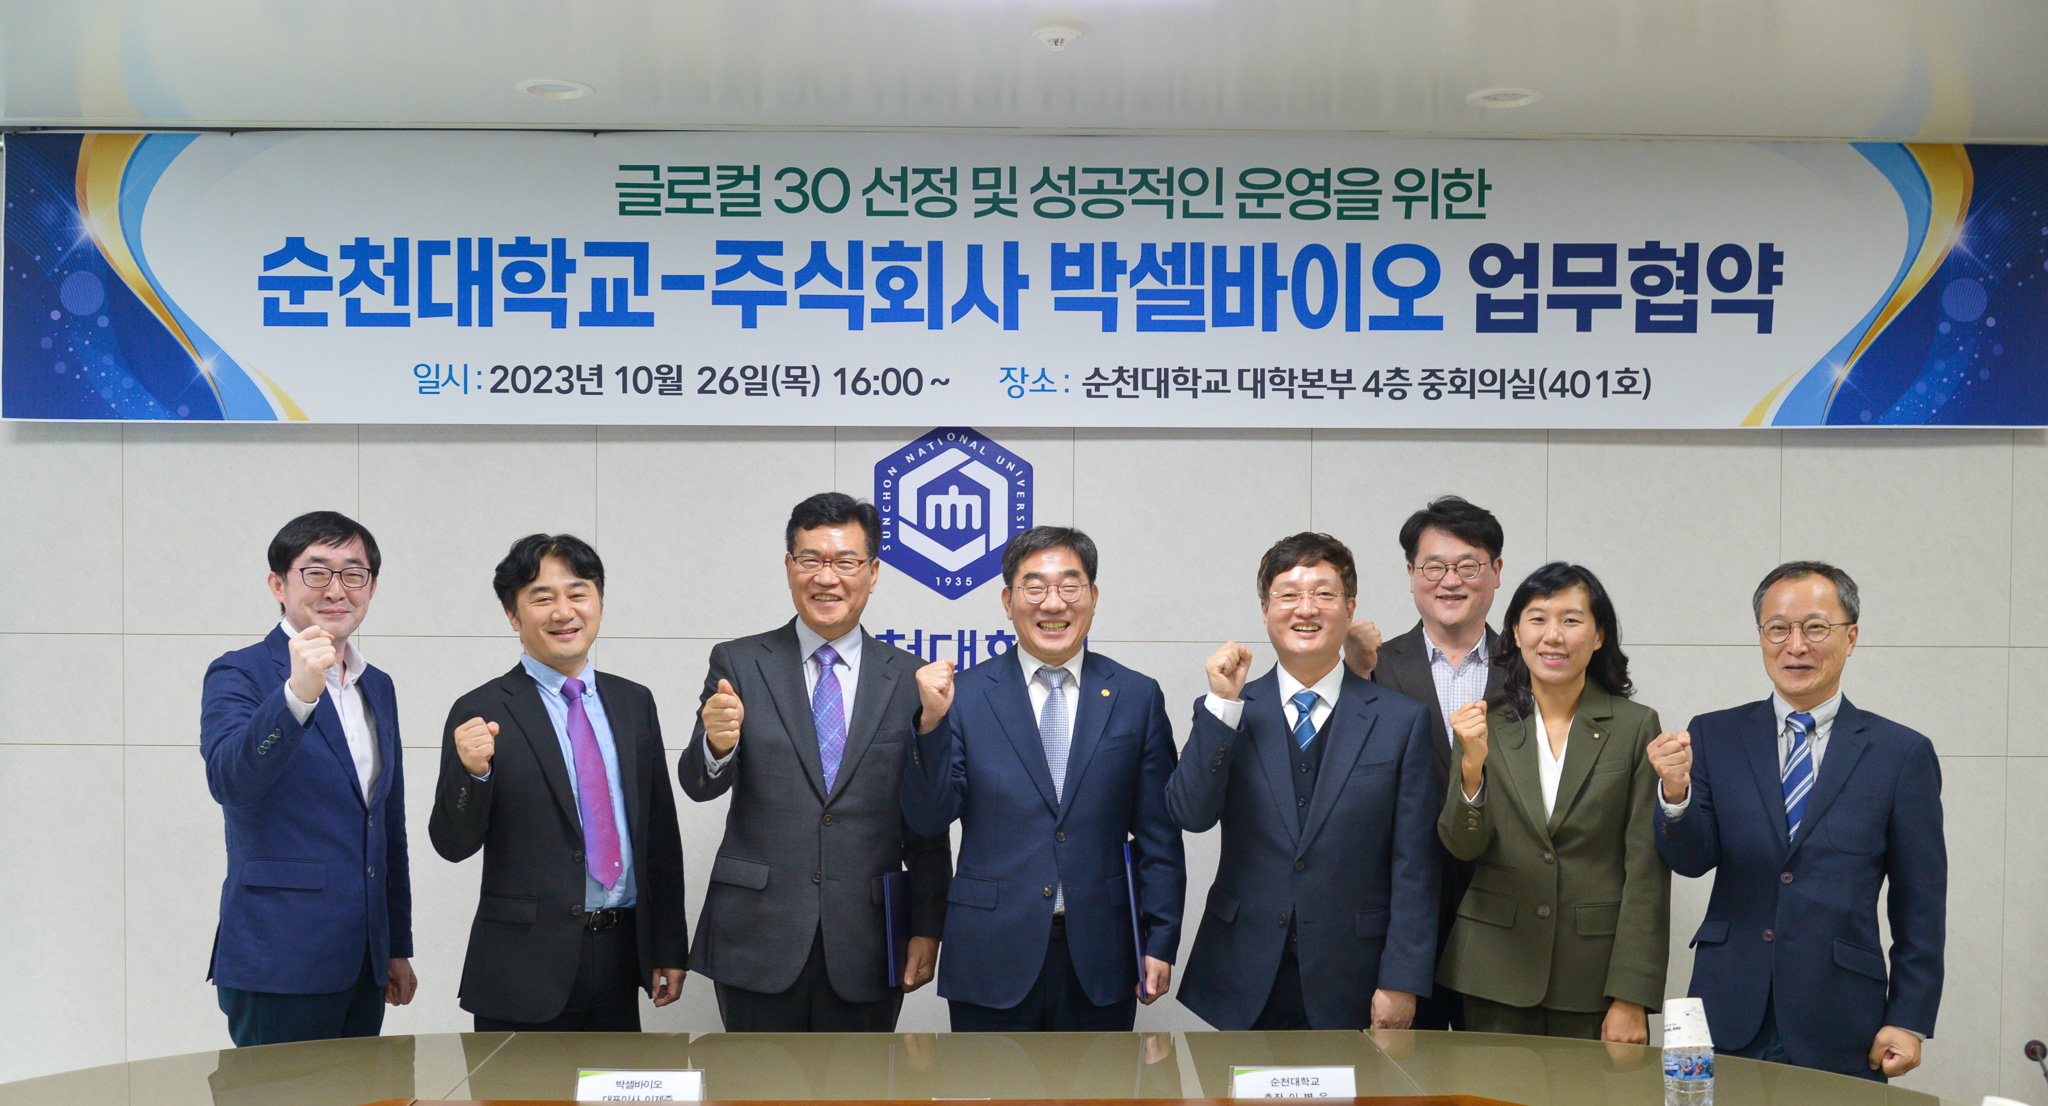 순천대학교(약학대학)-(주)박셀바이오 협약체결 관련 행사